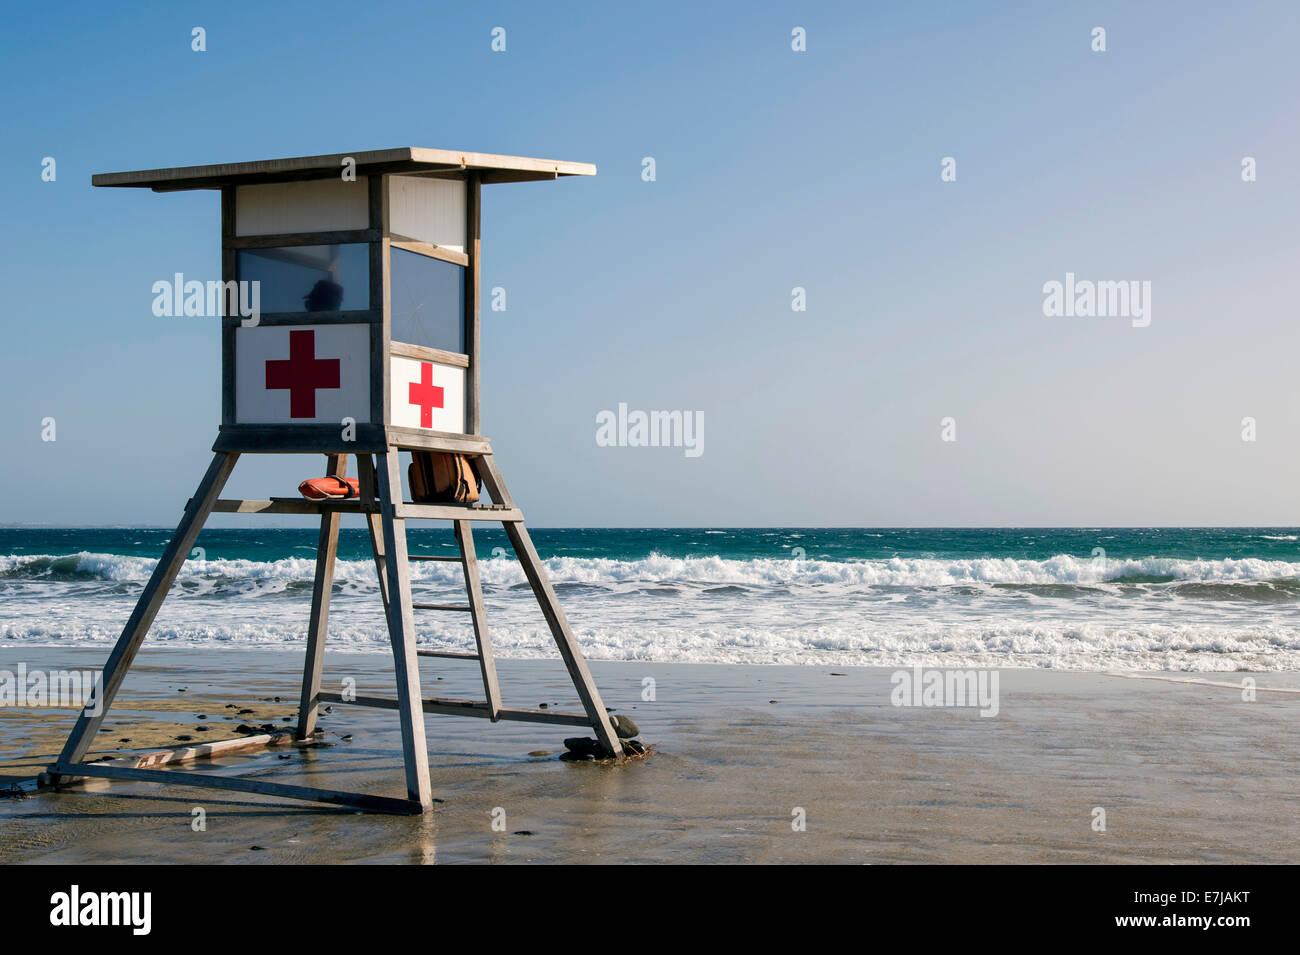 Rettungsschwimmer-Turm von Cruz Roja, das spanische rote Kreuz auf dem Strand von Maspalomas, Playa del Ingles, Gran Canaria Stockfoto